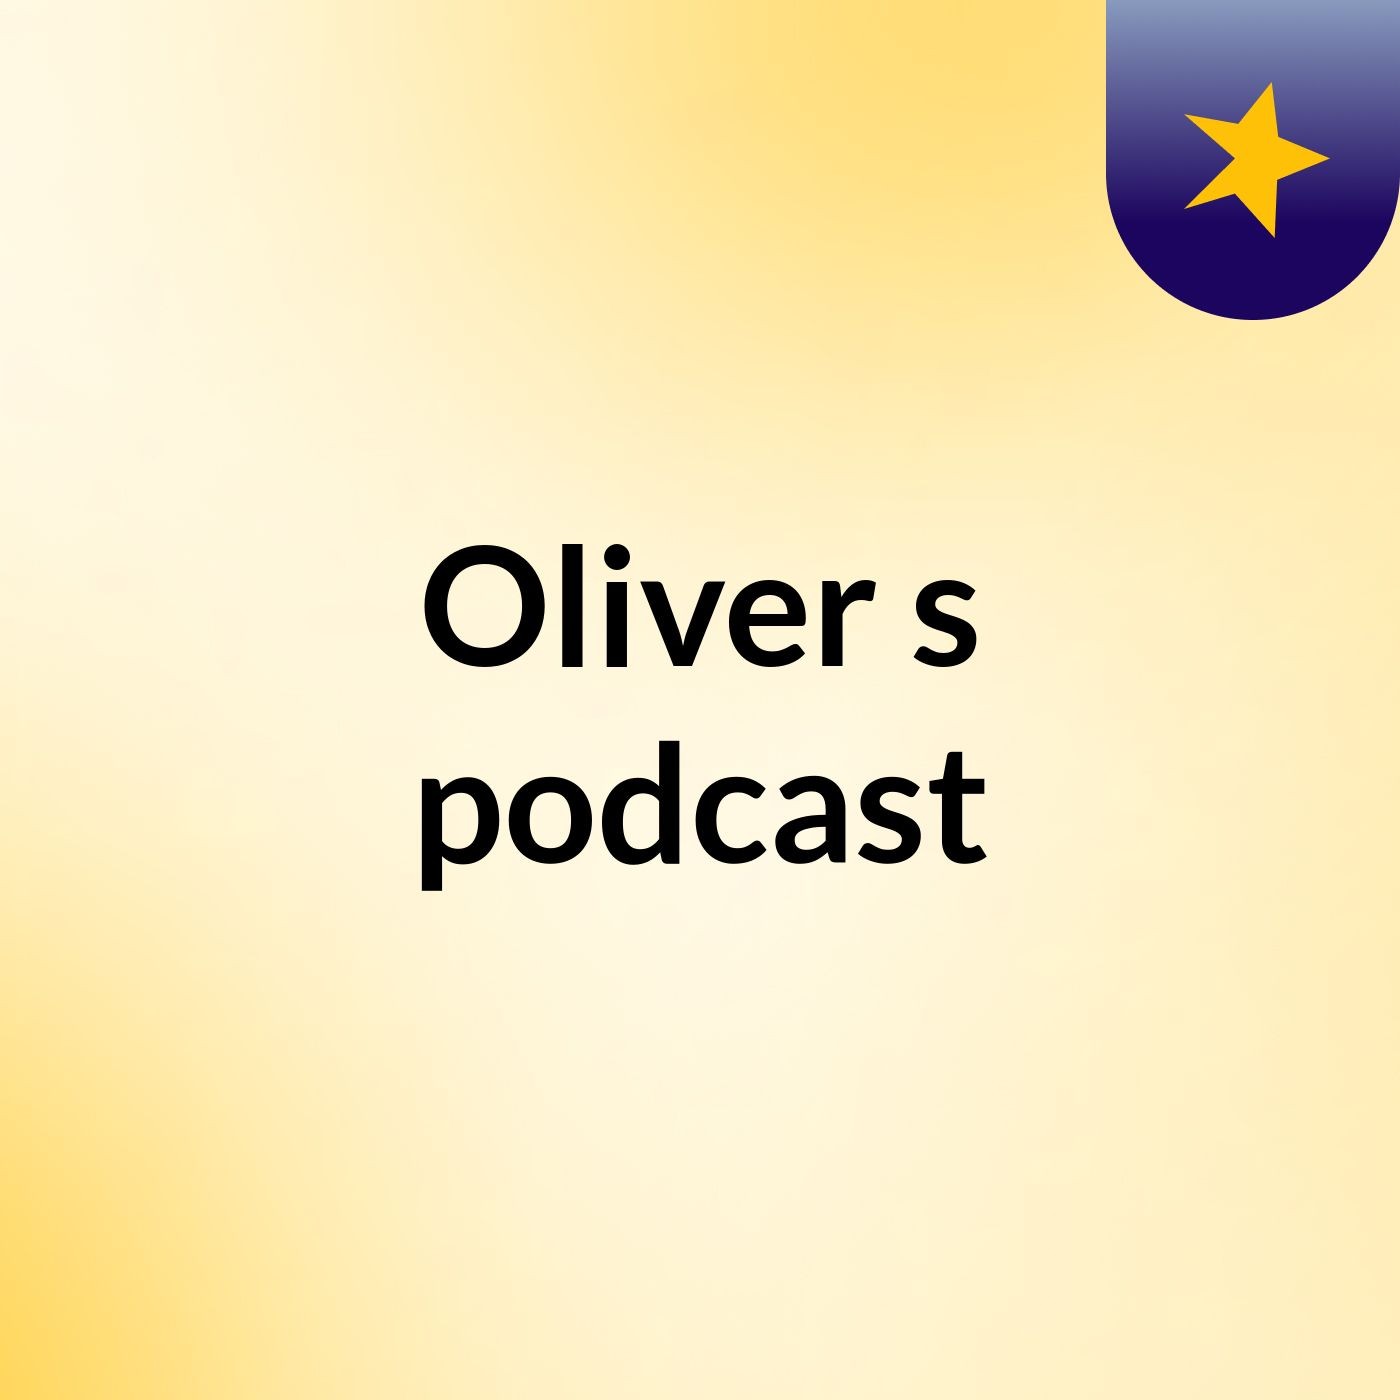 Episode 3 - Oliver's podcast